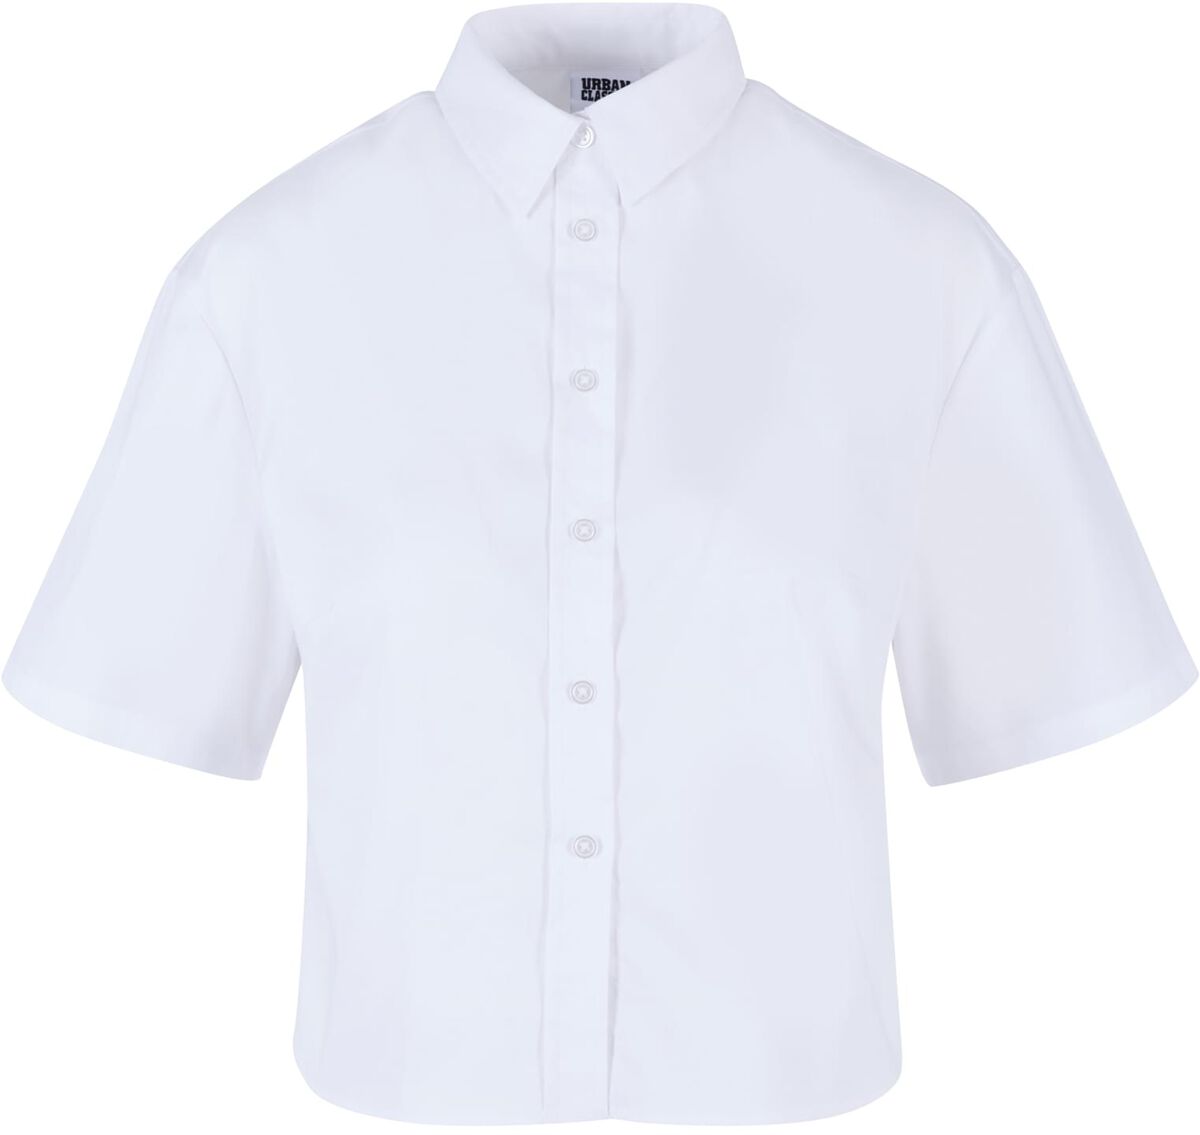 Urban Classics Kurzarmhemd - Ladies Oversized Shirt - XS bis 3XL - für Damen - Größe XS - weiß